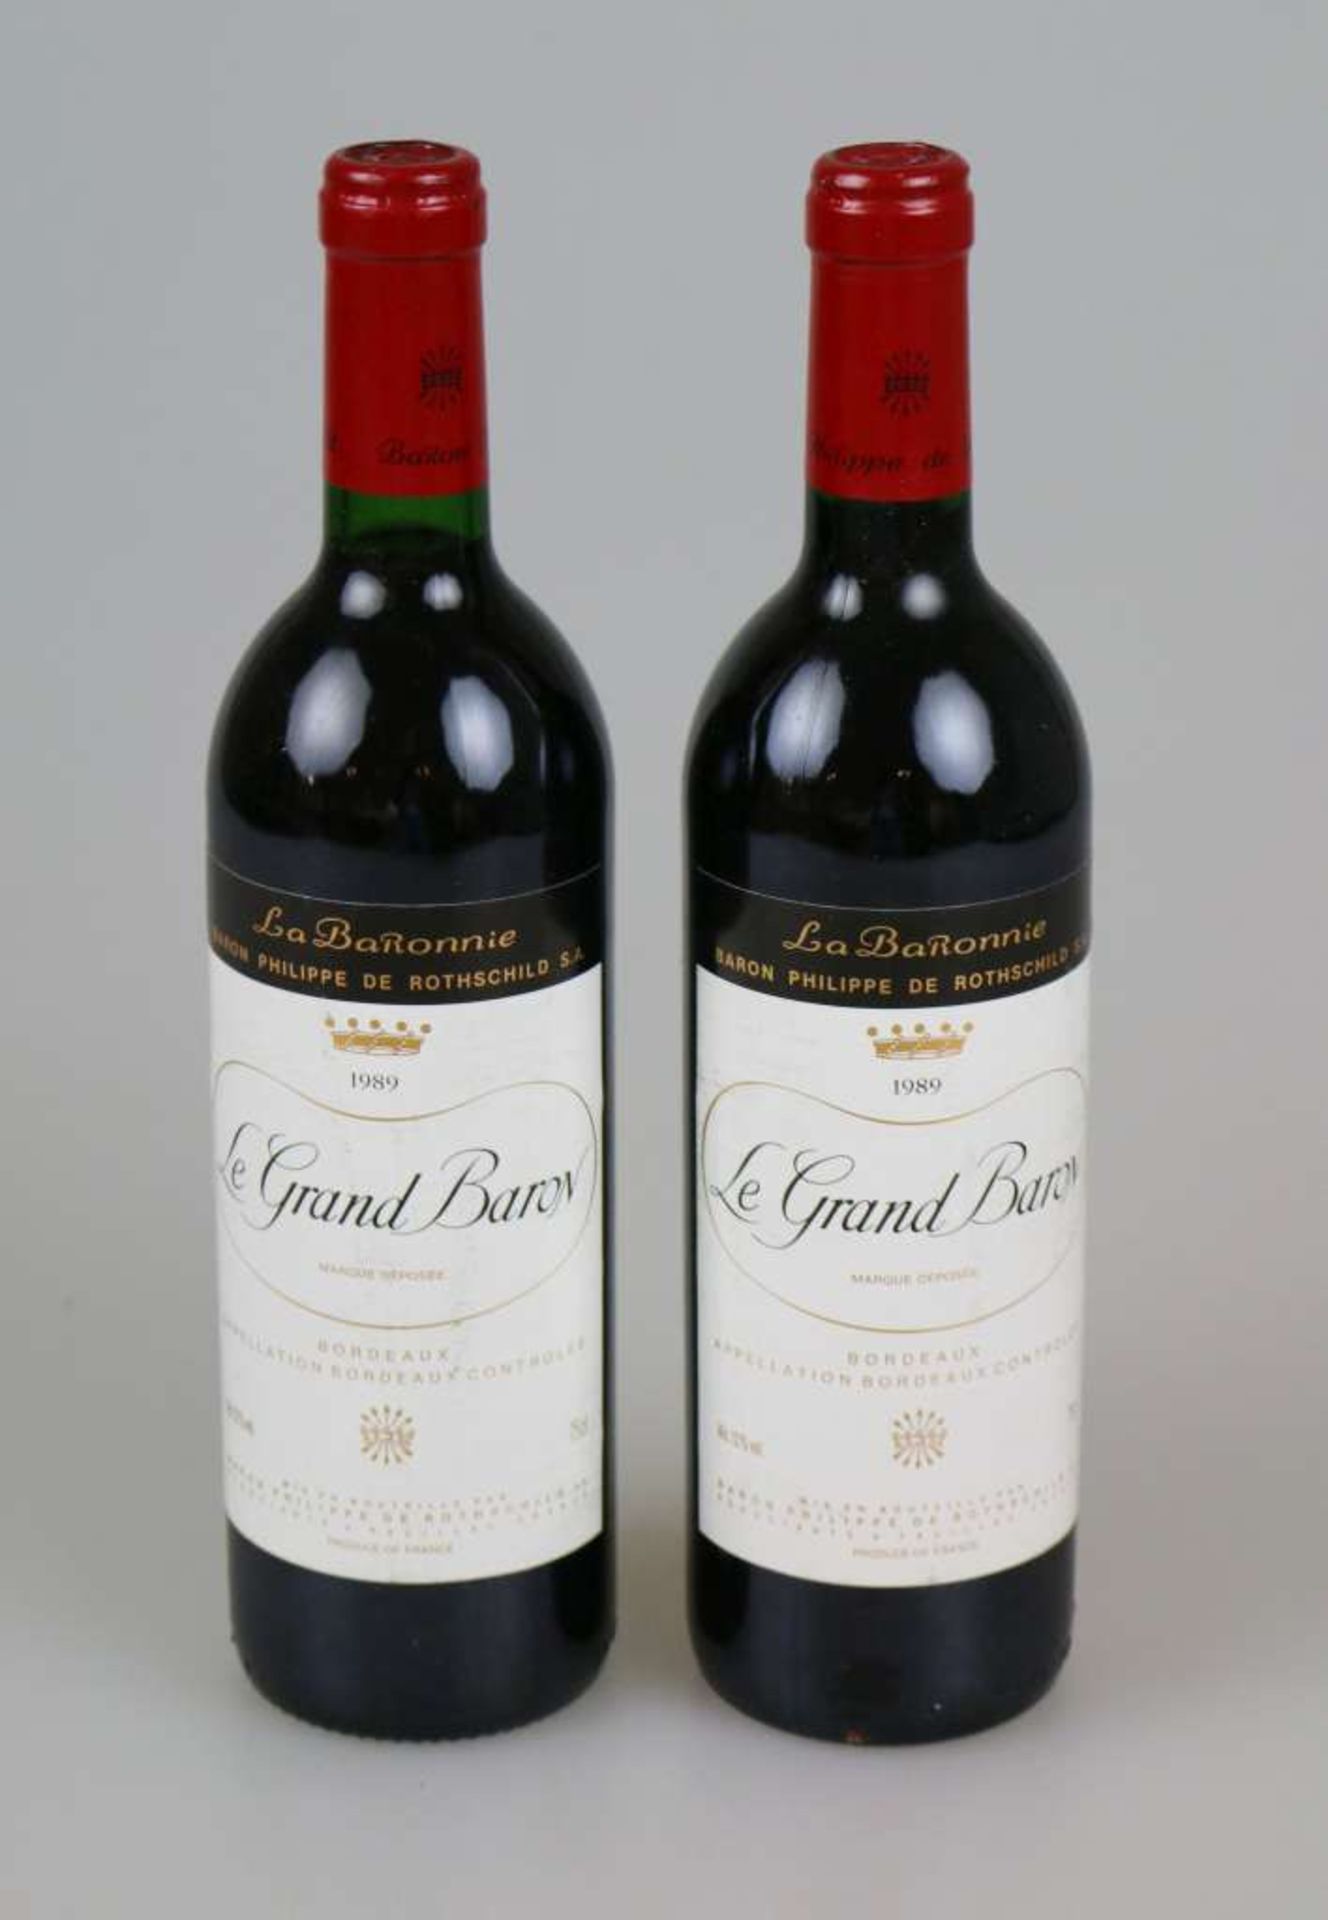 Rotwein, 2 Flaschen La Grand Baron, La BaRonnie, Baron Philippe de Rothschild, 1989, 0,75 L. Top